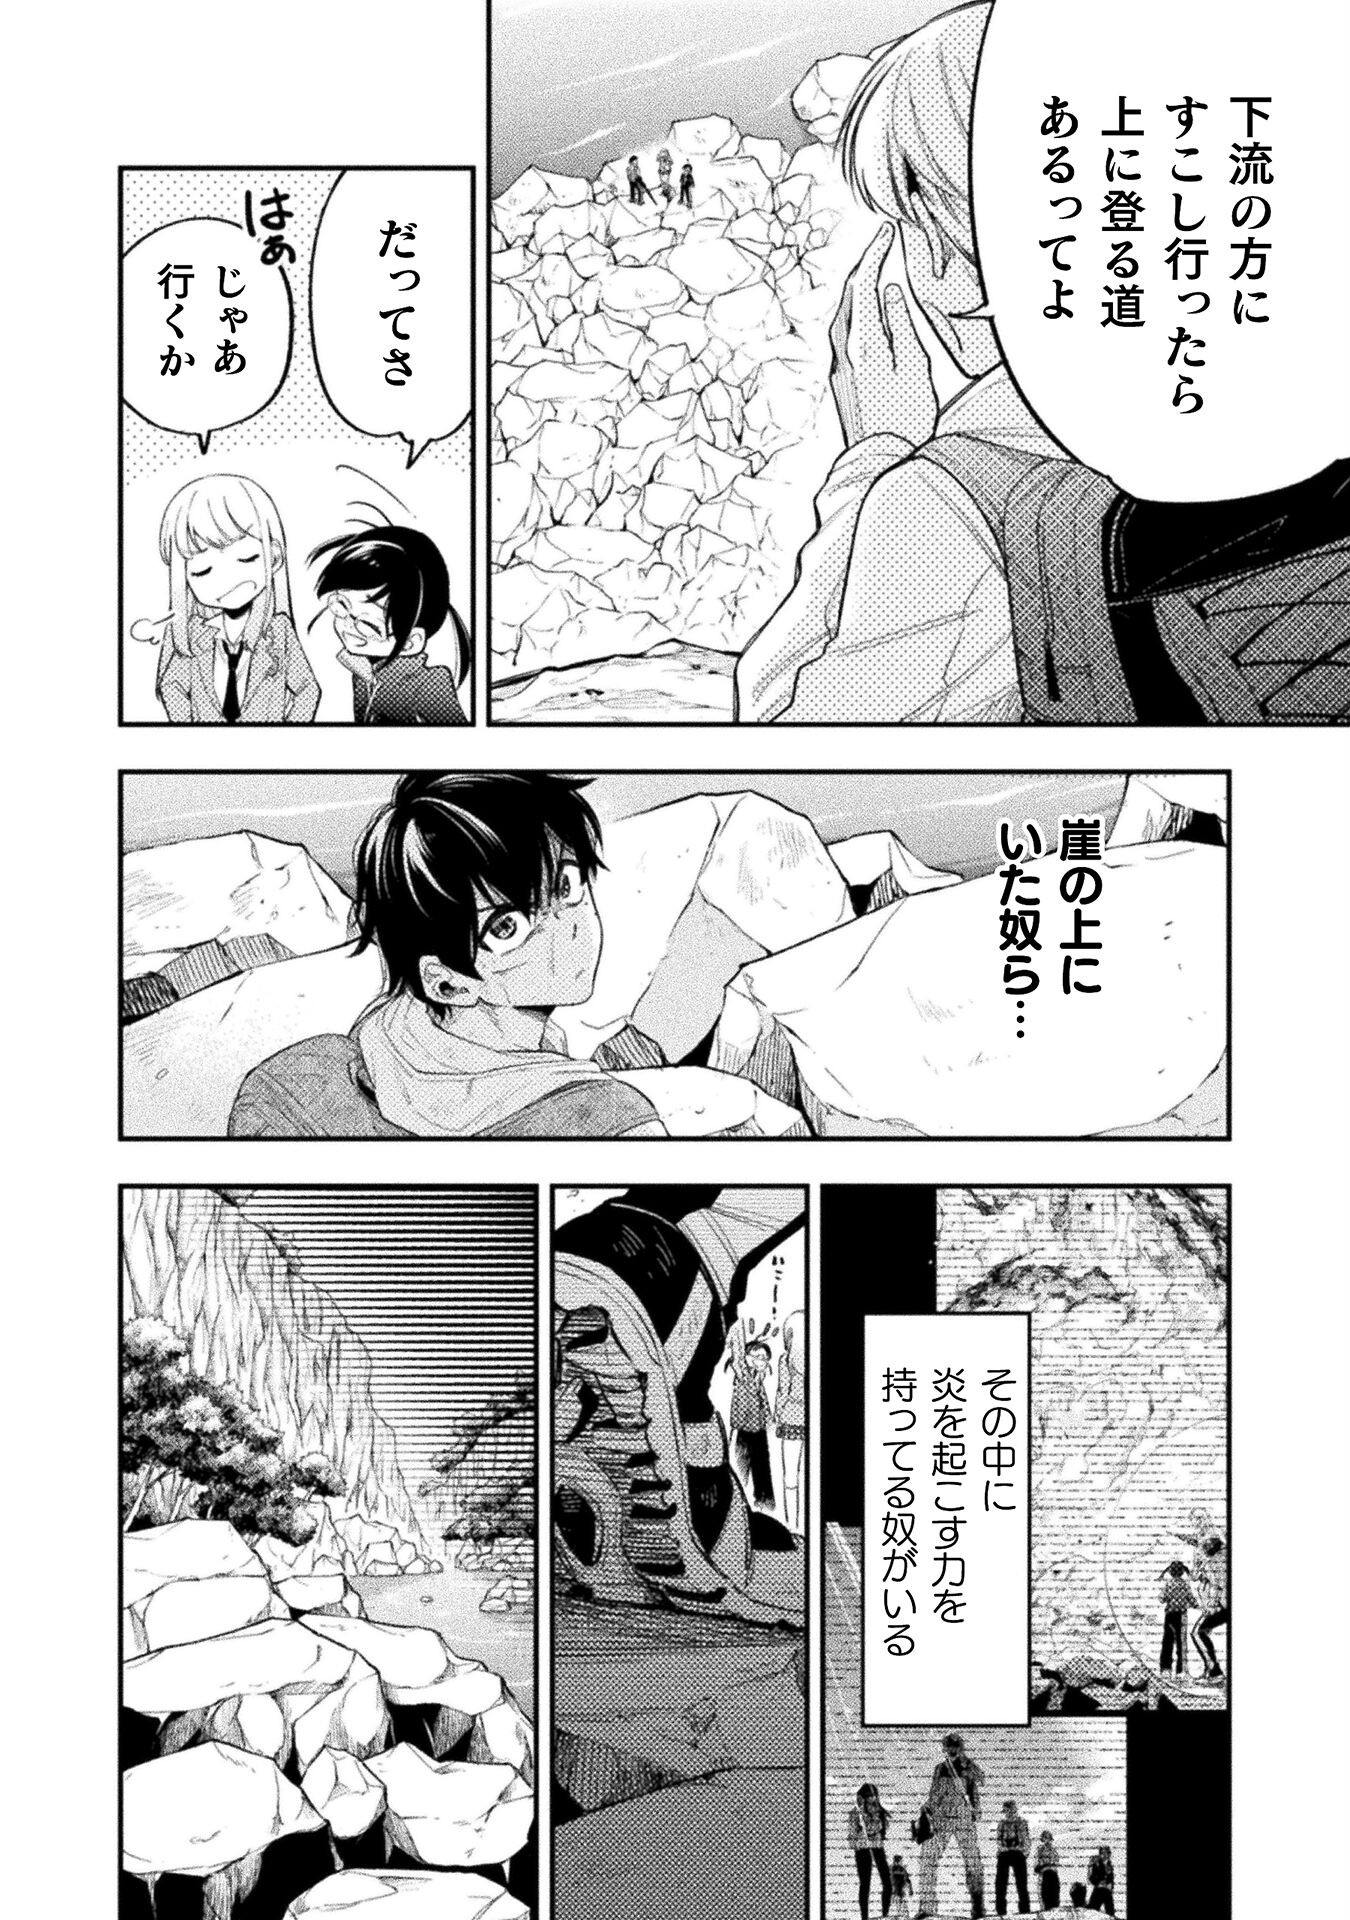 Umibe no Byouin de Kanojo to Hanashita Ikutsu ka no Koto - Chapter 12 - Page 2